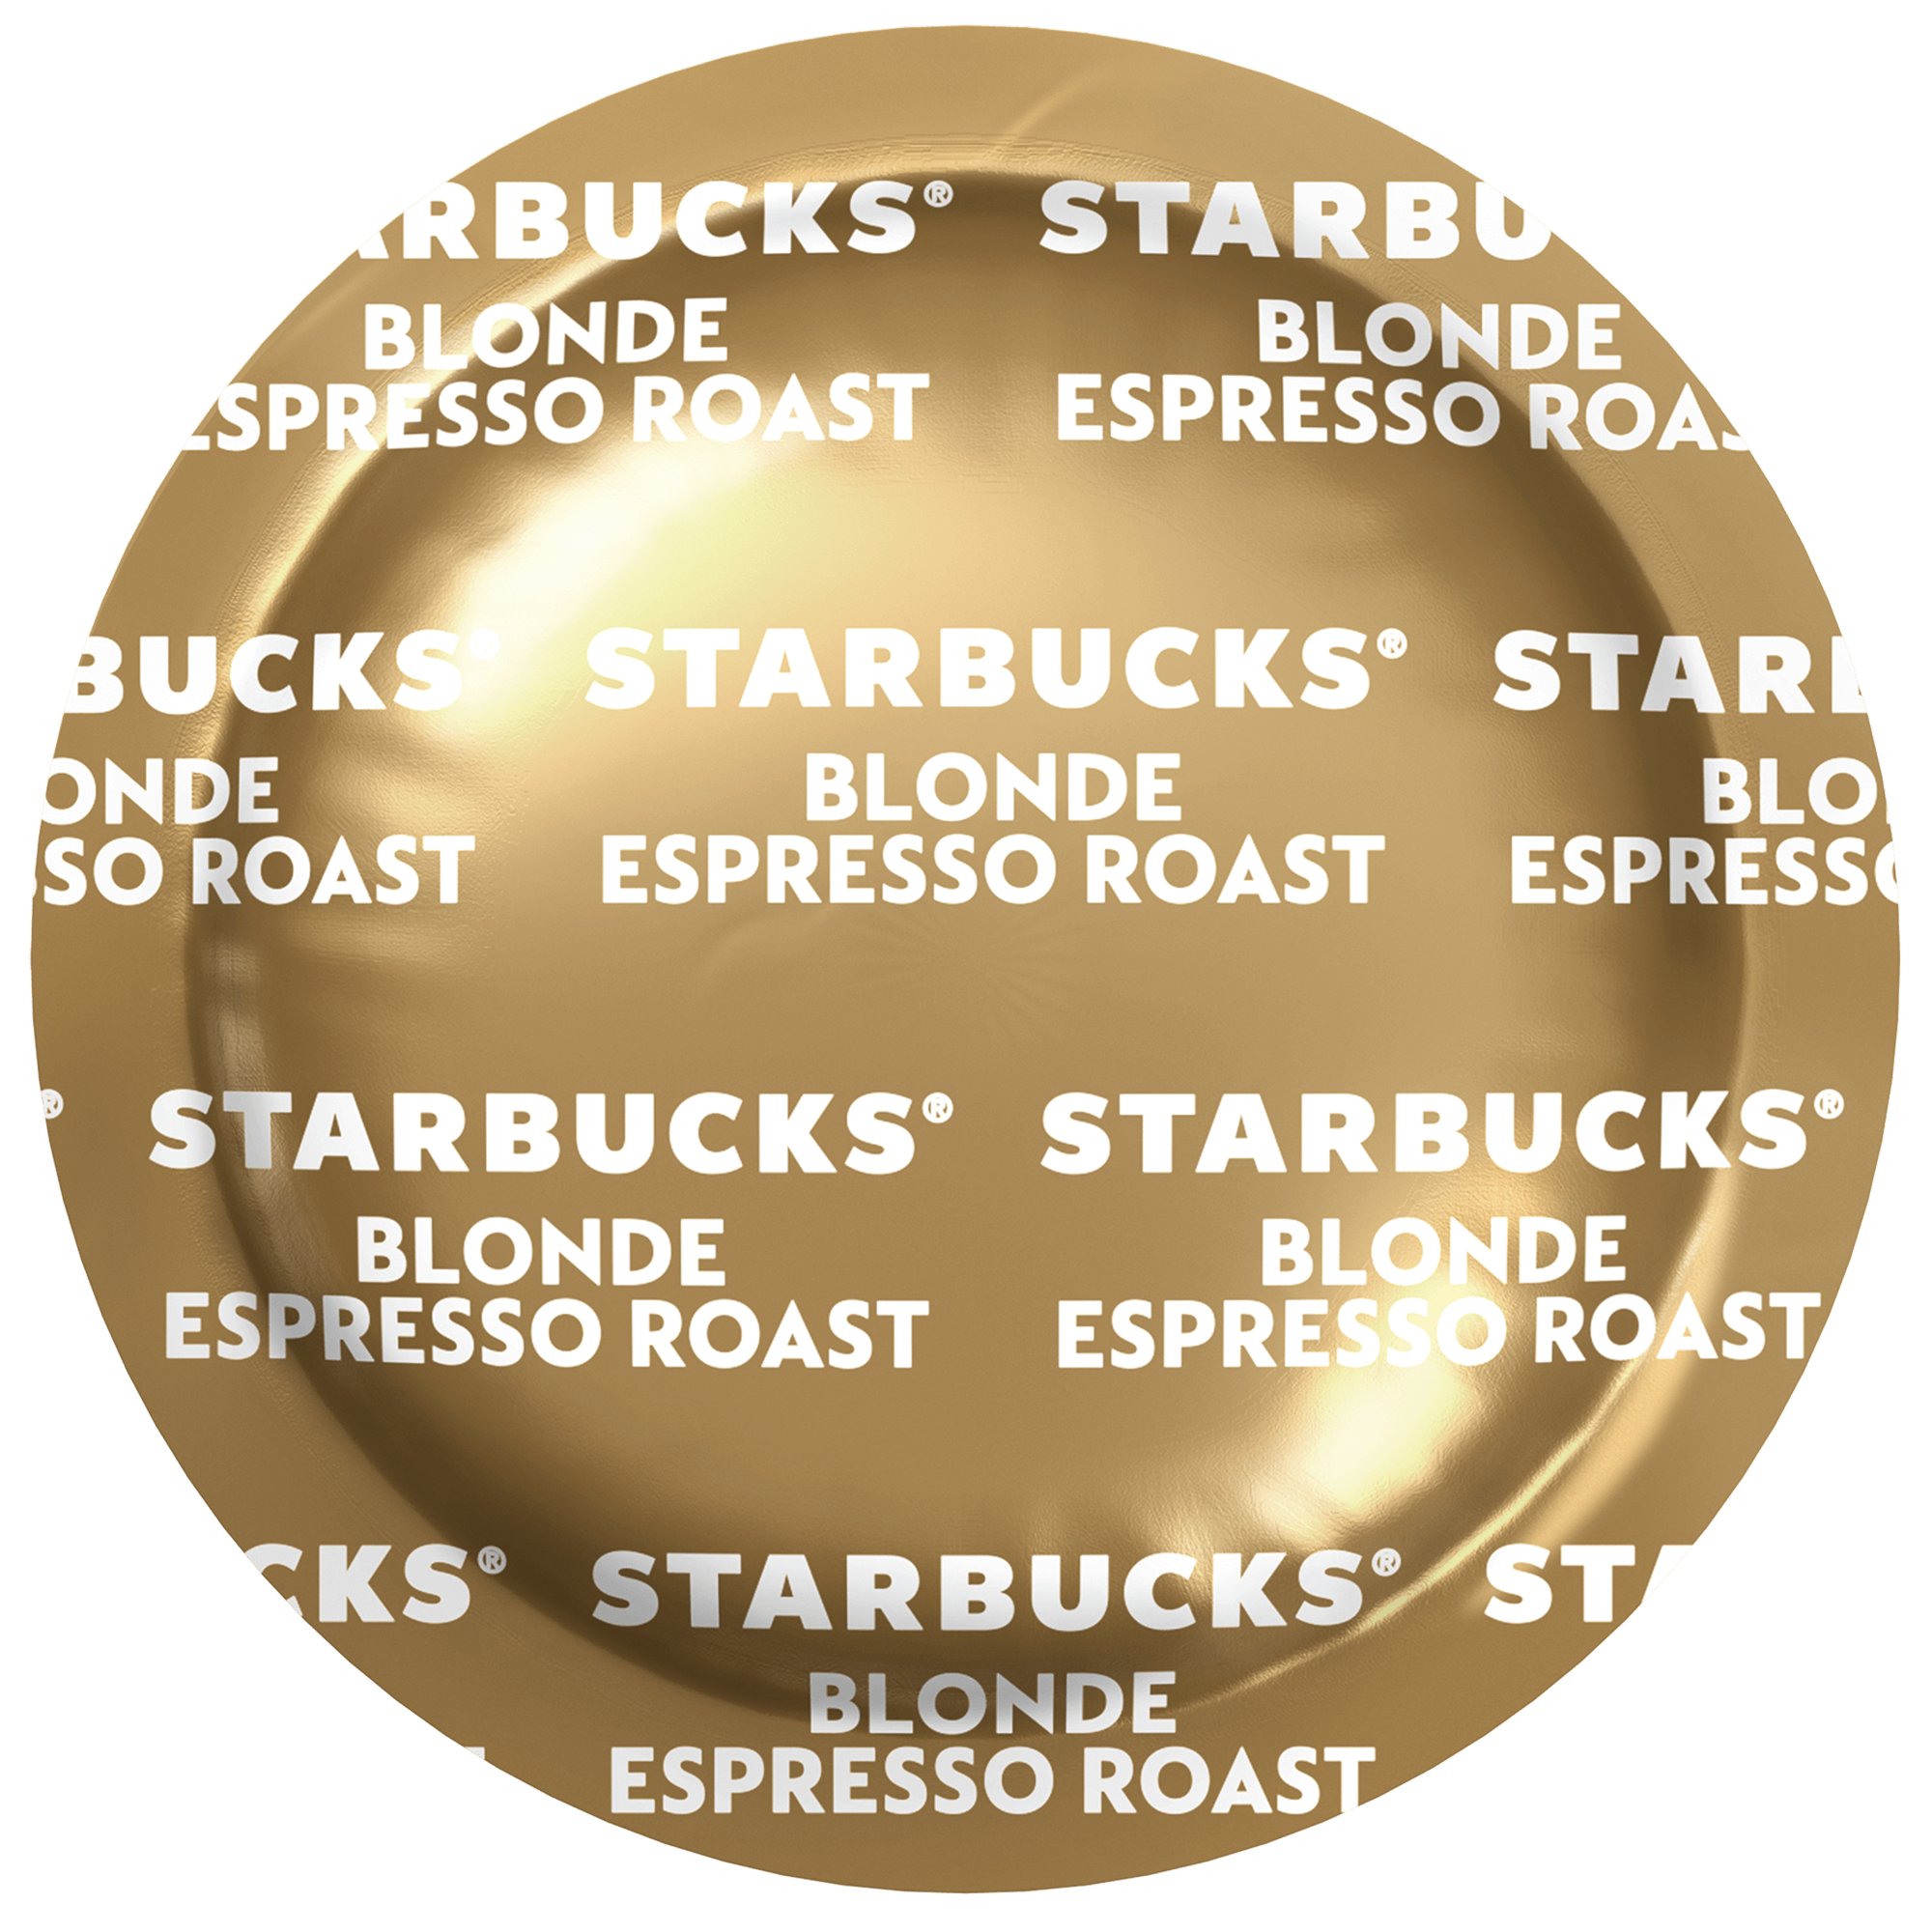 Starbucks - Starbucks, Nespresso - Coffee, Ground, Blonde, Espresso Roast,  Aluminum Capsules (10 count), Shop